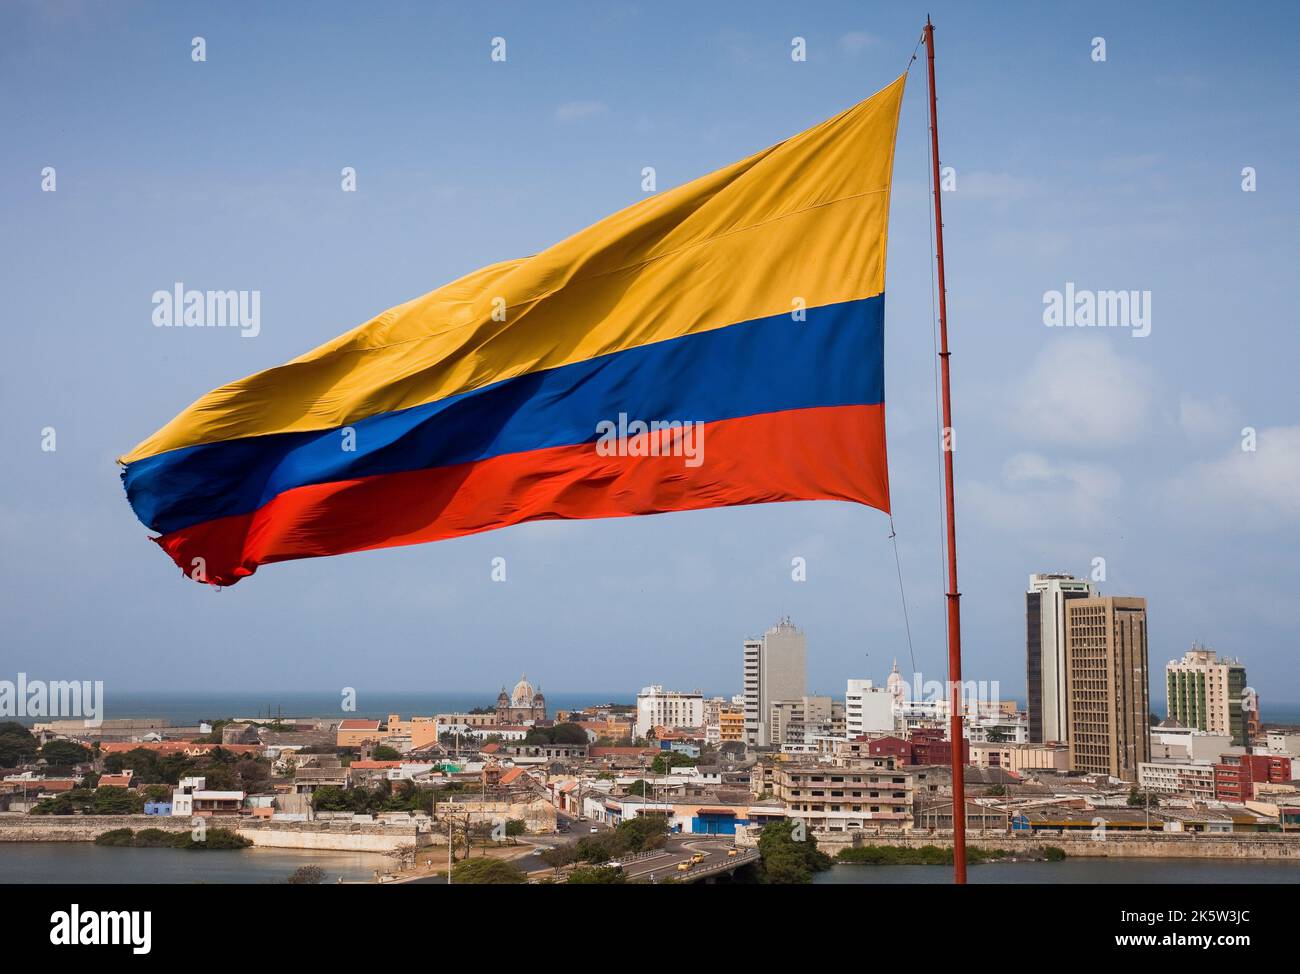 Kolumbien, die alte Stadt Cartagena, ist innerhalb von Mauern und durch den UNESCO-Weltkulturerbe geschützt. Auf der Festung San Roantea winkt eine riesige Flagge Stockfoto